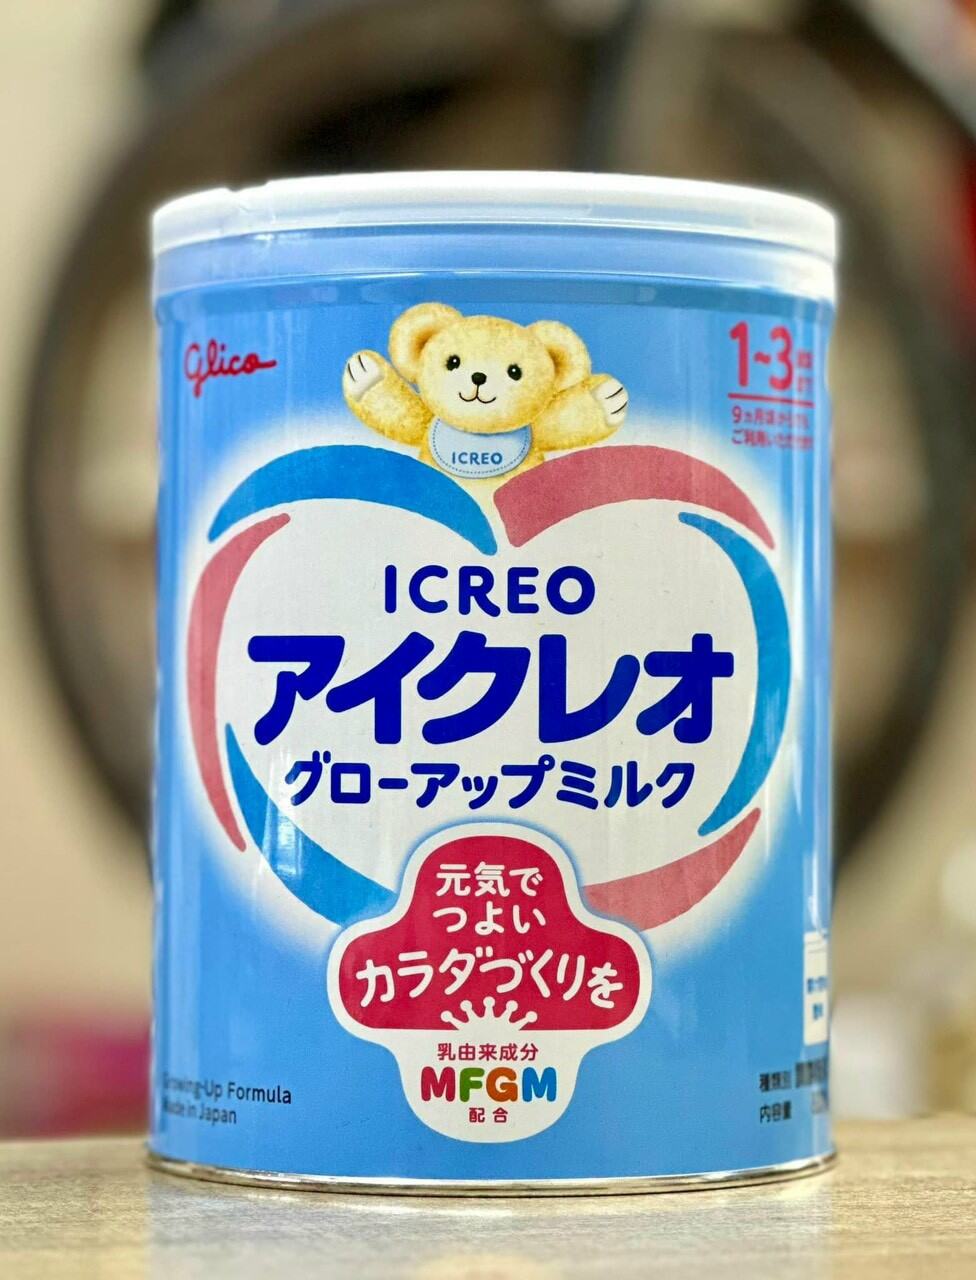 4 lon sữa Glico số 1 lon 820g hàng nội địa Nhật Bản tặng 2 sét 5 thanh